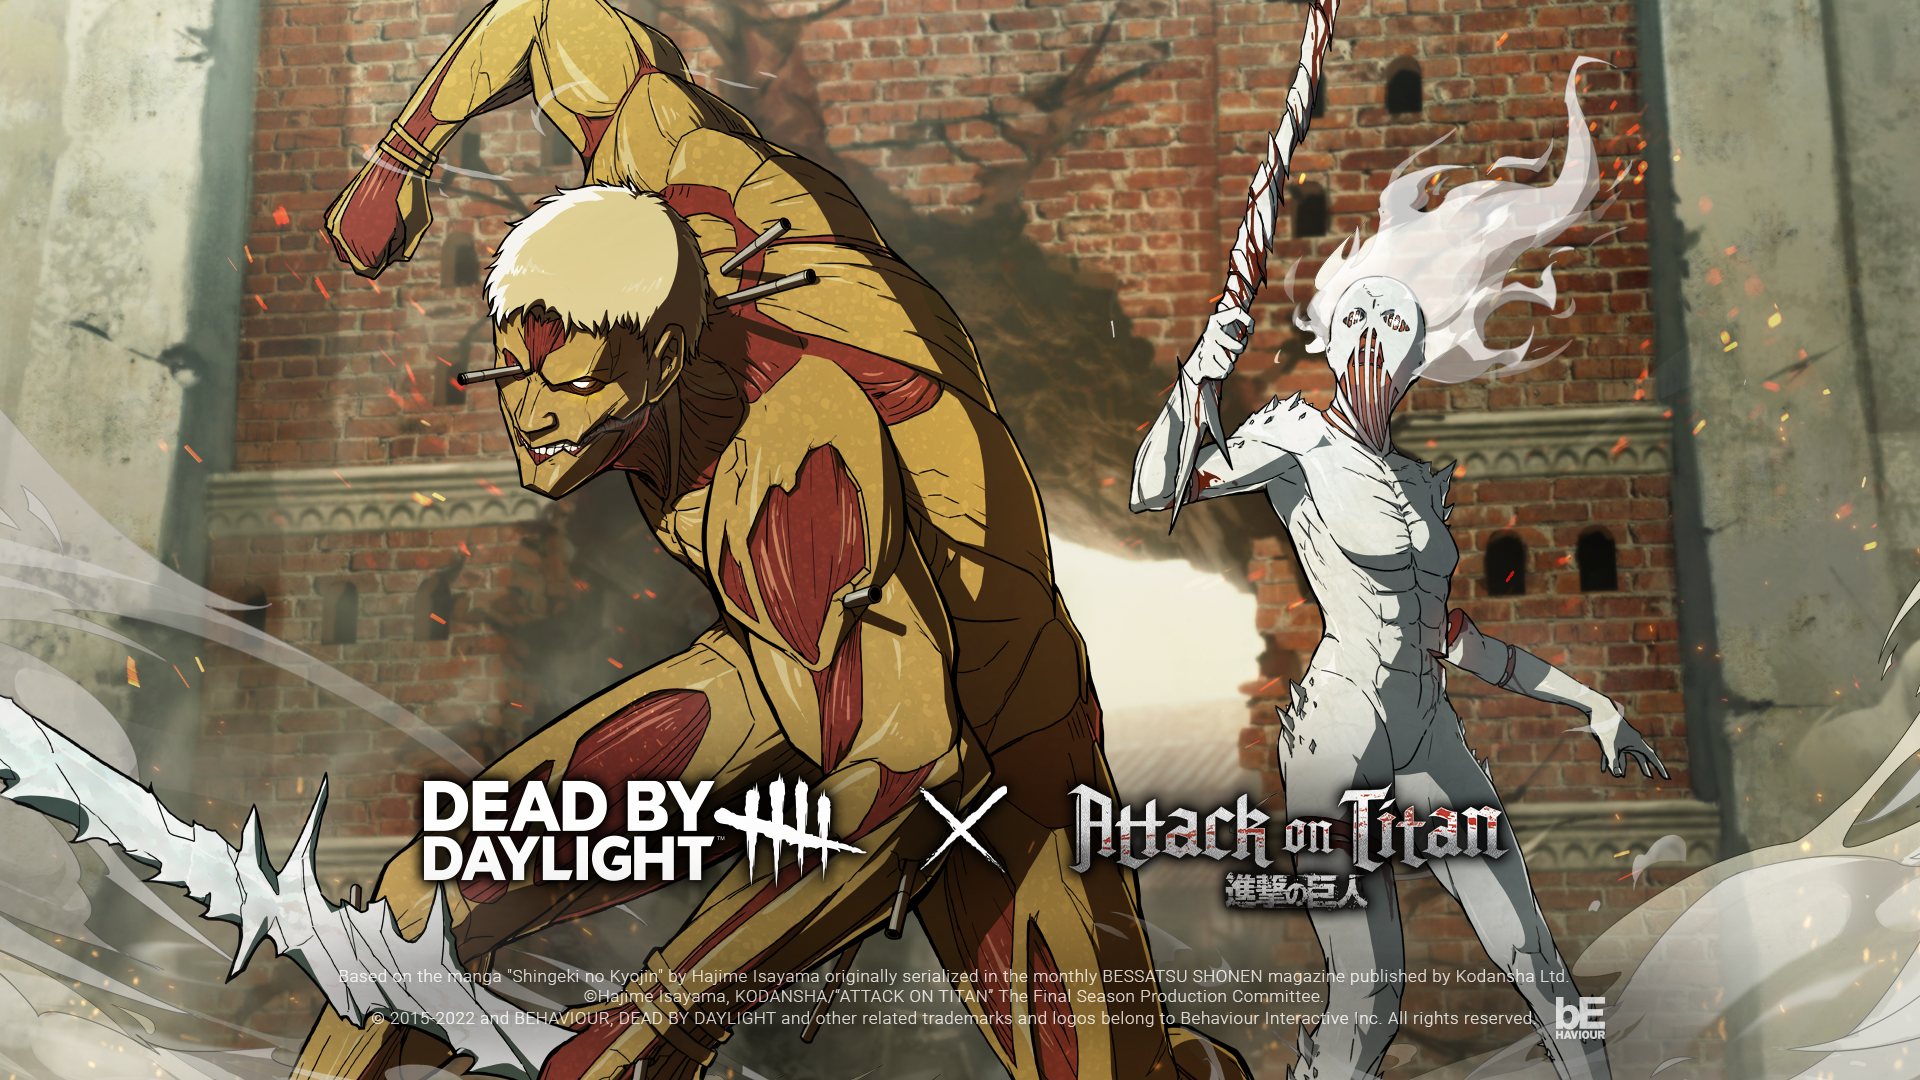 ANIME-se on X: Anime: Shingeki no Kyojin: Attack on Titan   / X